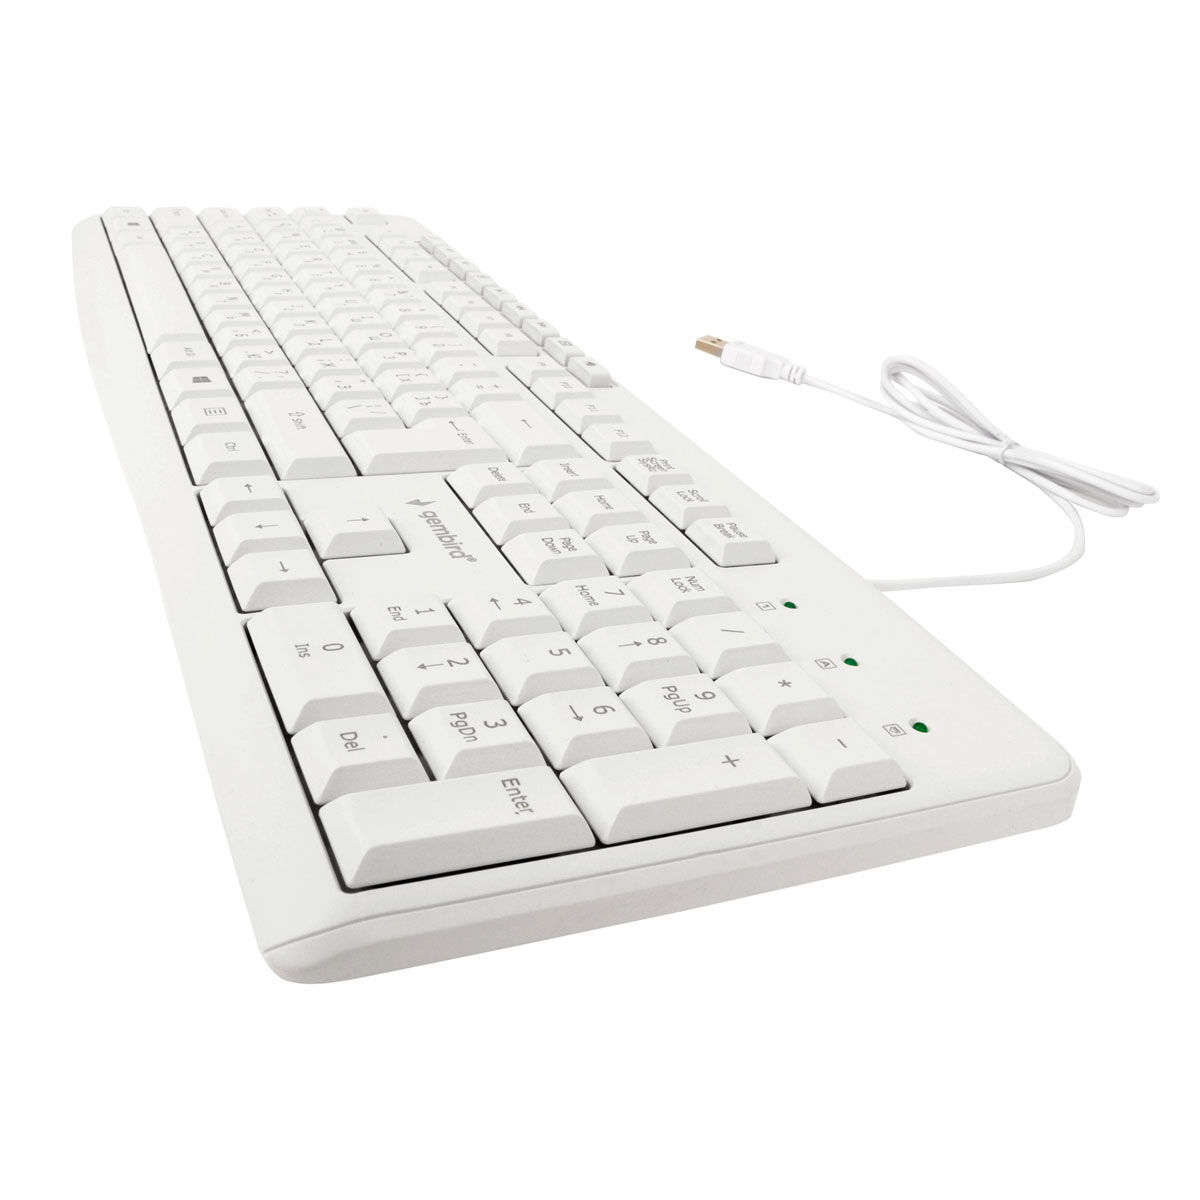 Клавиатура проводная Gembird KB-8430M, мембранная, 113 клавиш, мультимедиа, 9 доп. клавиш, кабель 1.5м, белая 2